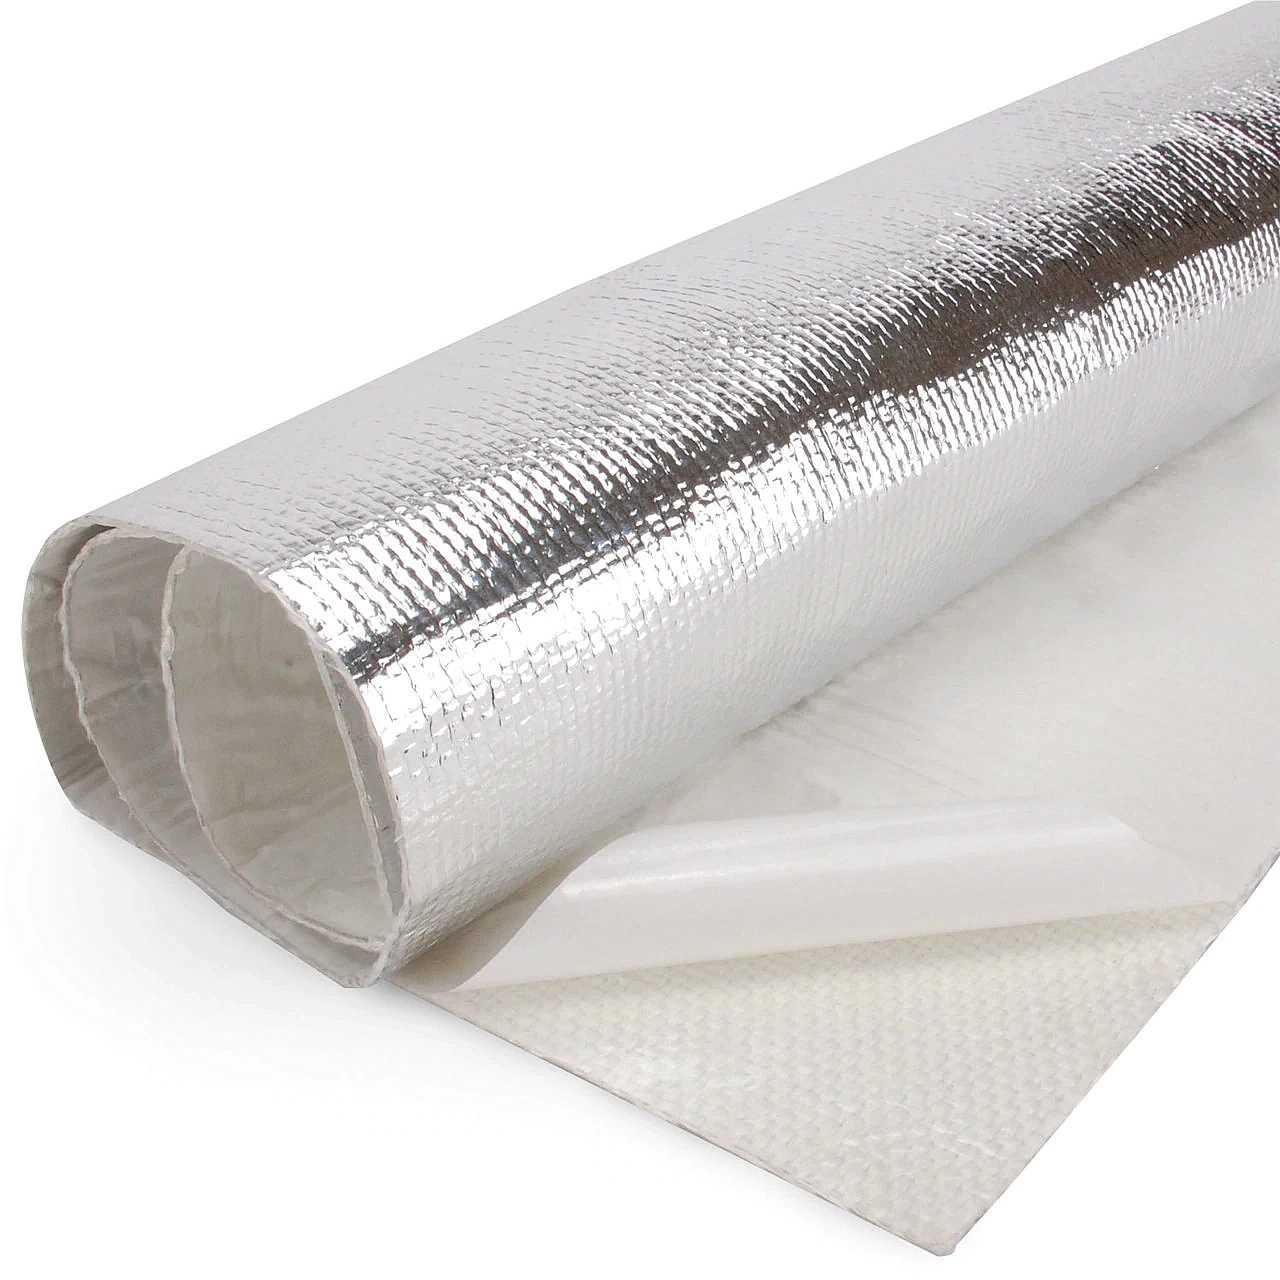 Aluminium heat protection mat Self-adhesive